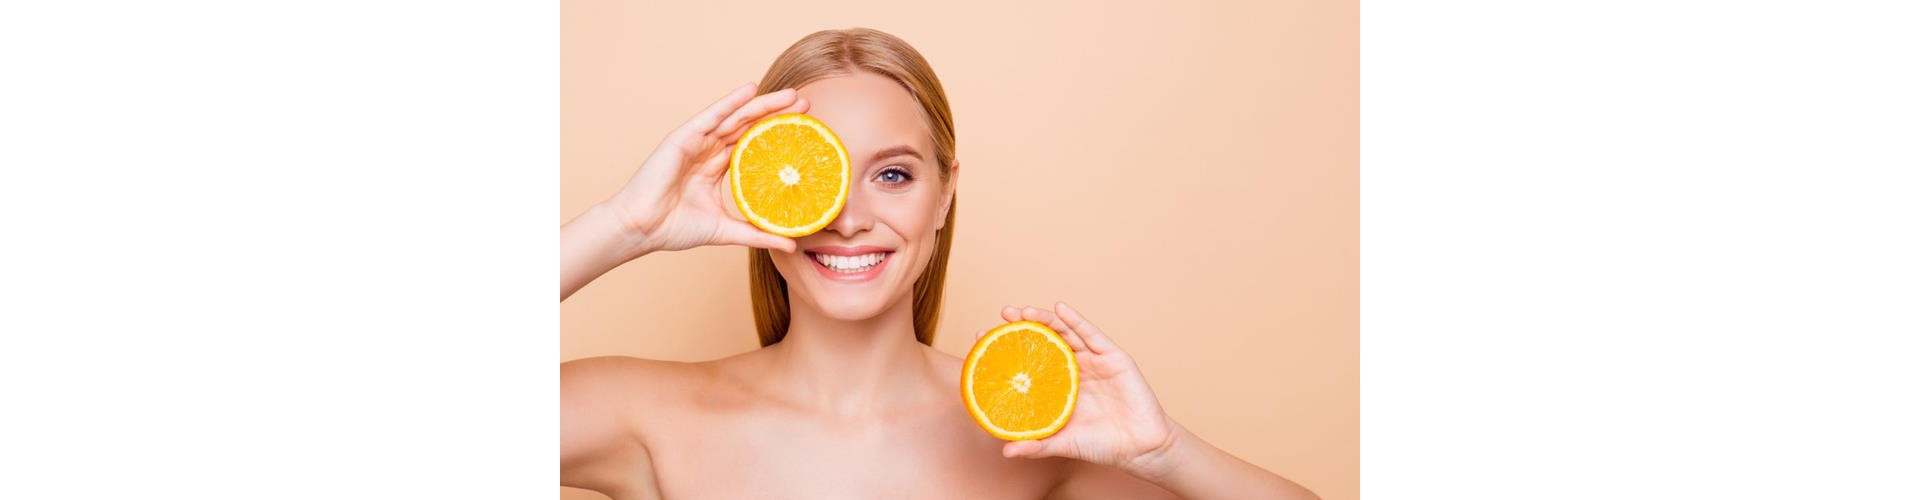 Разные формы витамина С в косметике – как это работает